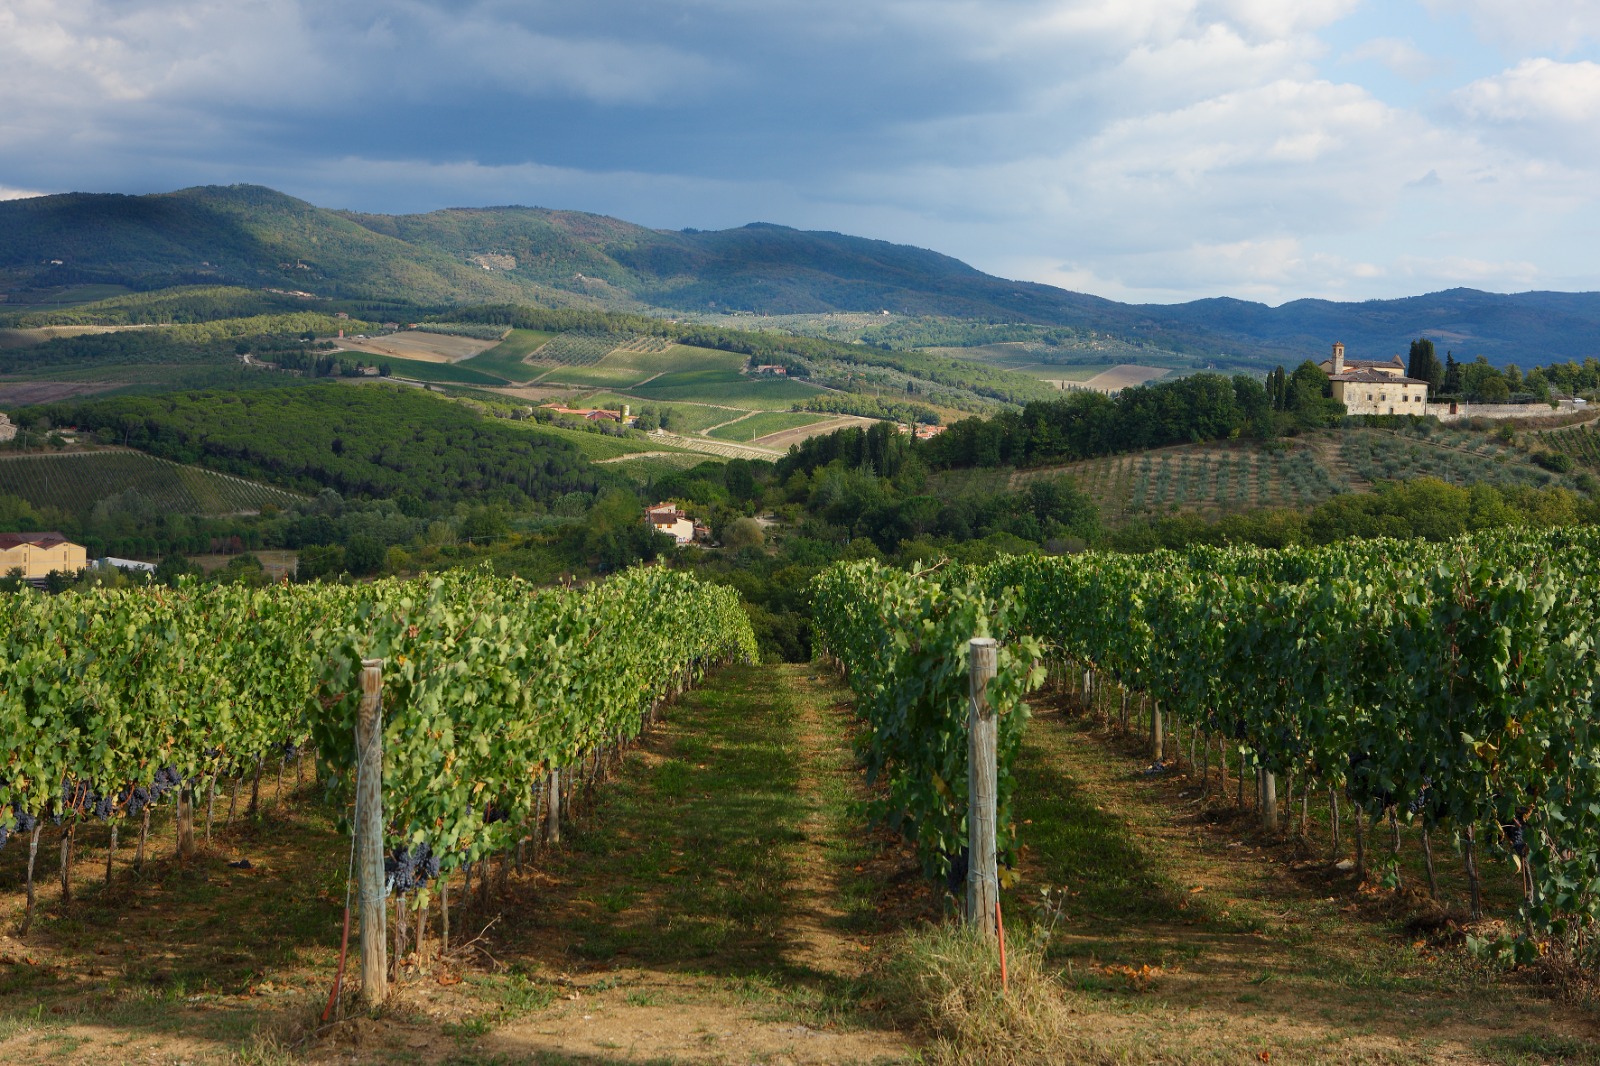 Via libera al piano di sostegno agli investimenti nella filiera vitivinicola toscana